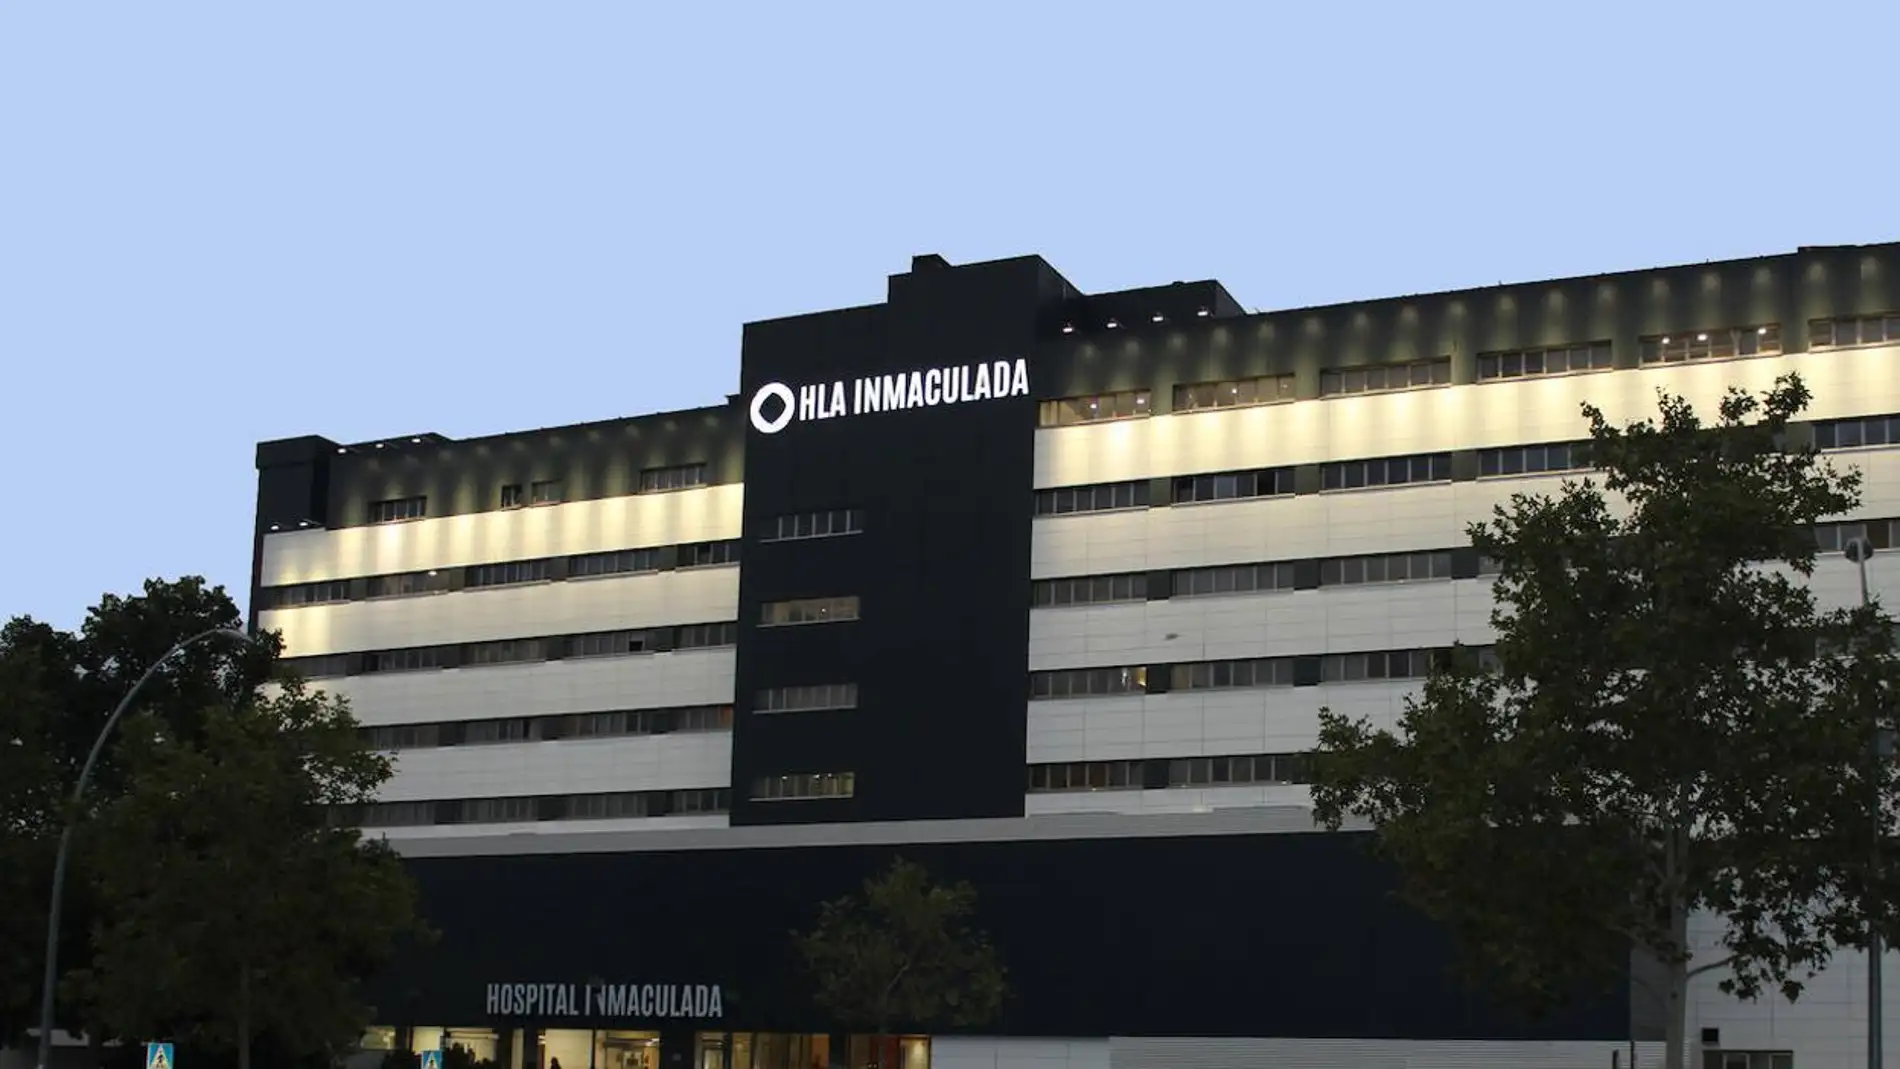 El Hospital HLA Inmaculada, considerado uno de los mejores hospitales privados de Granada según Merco 